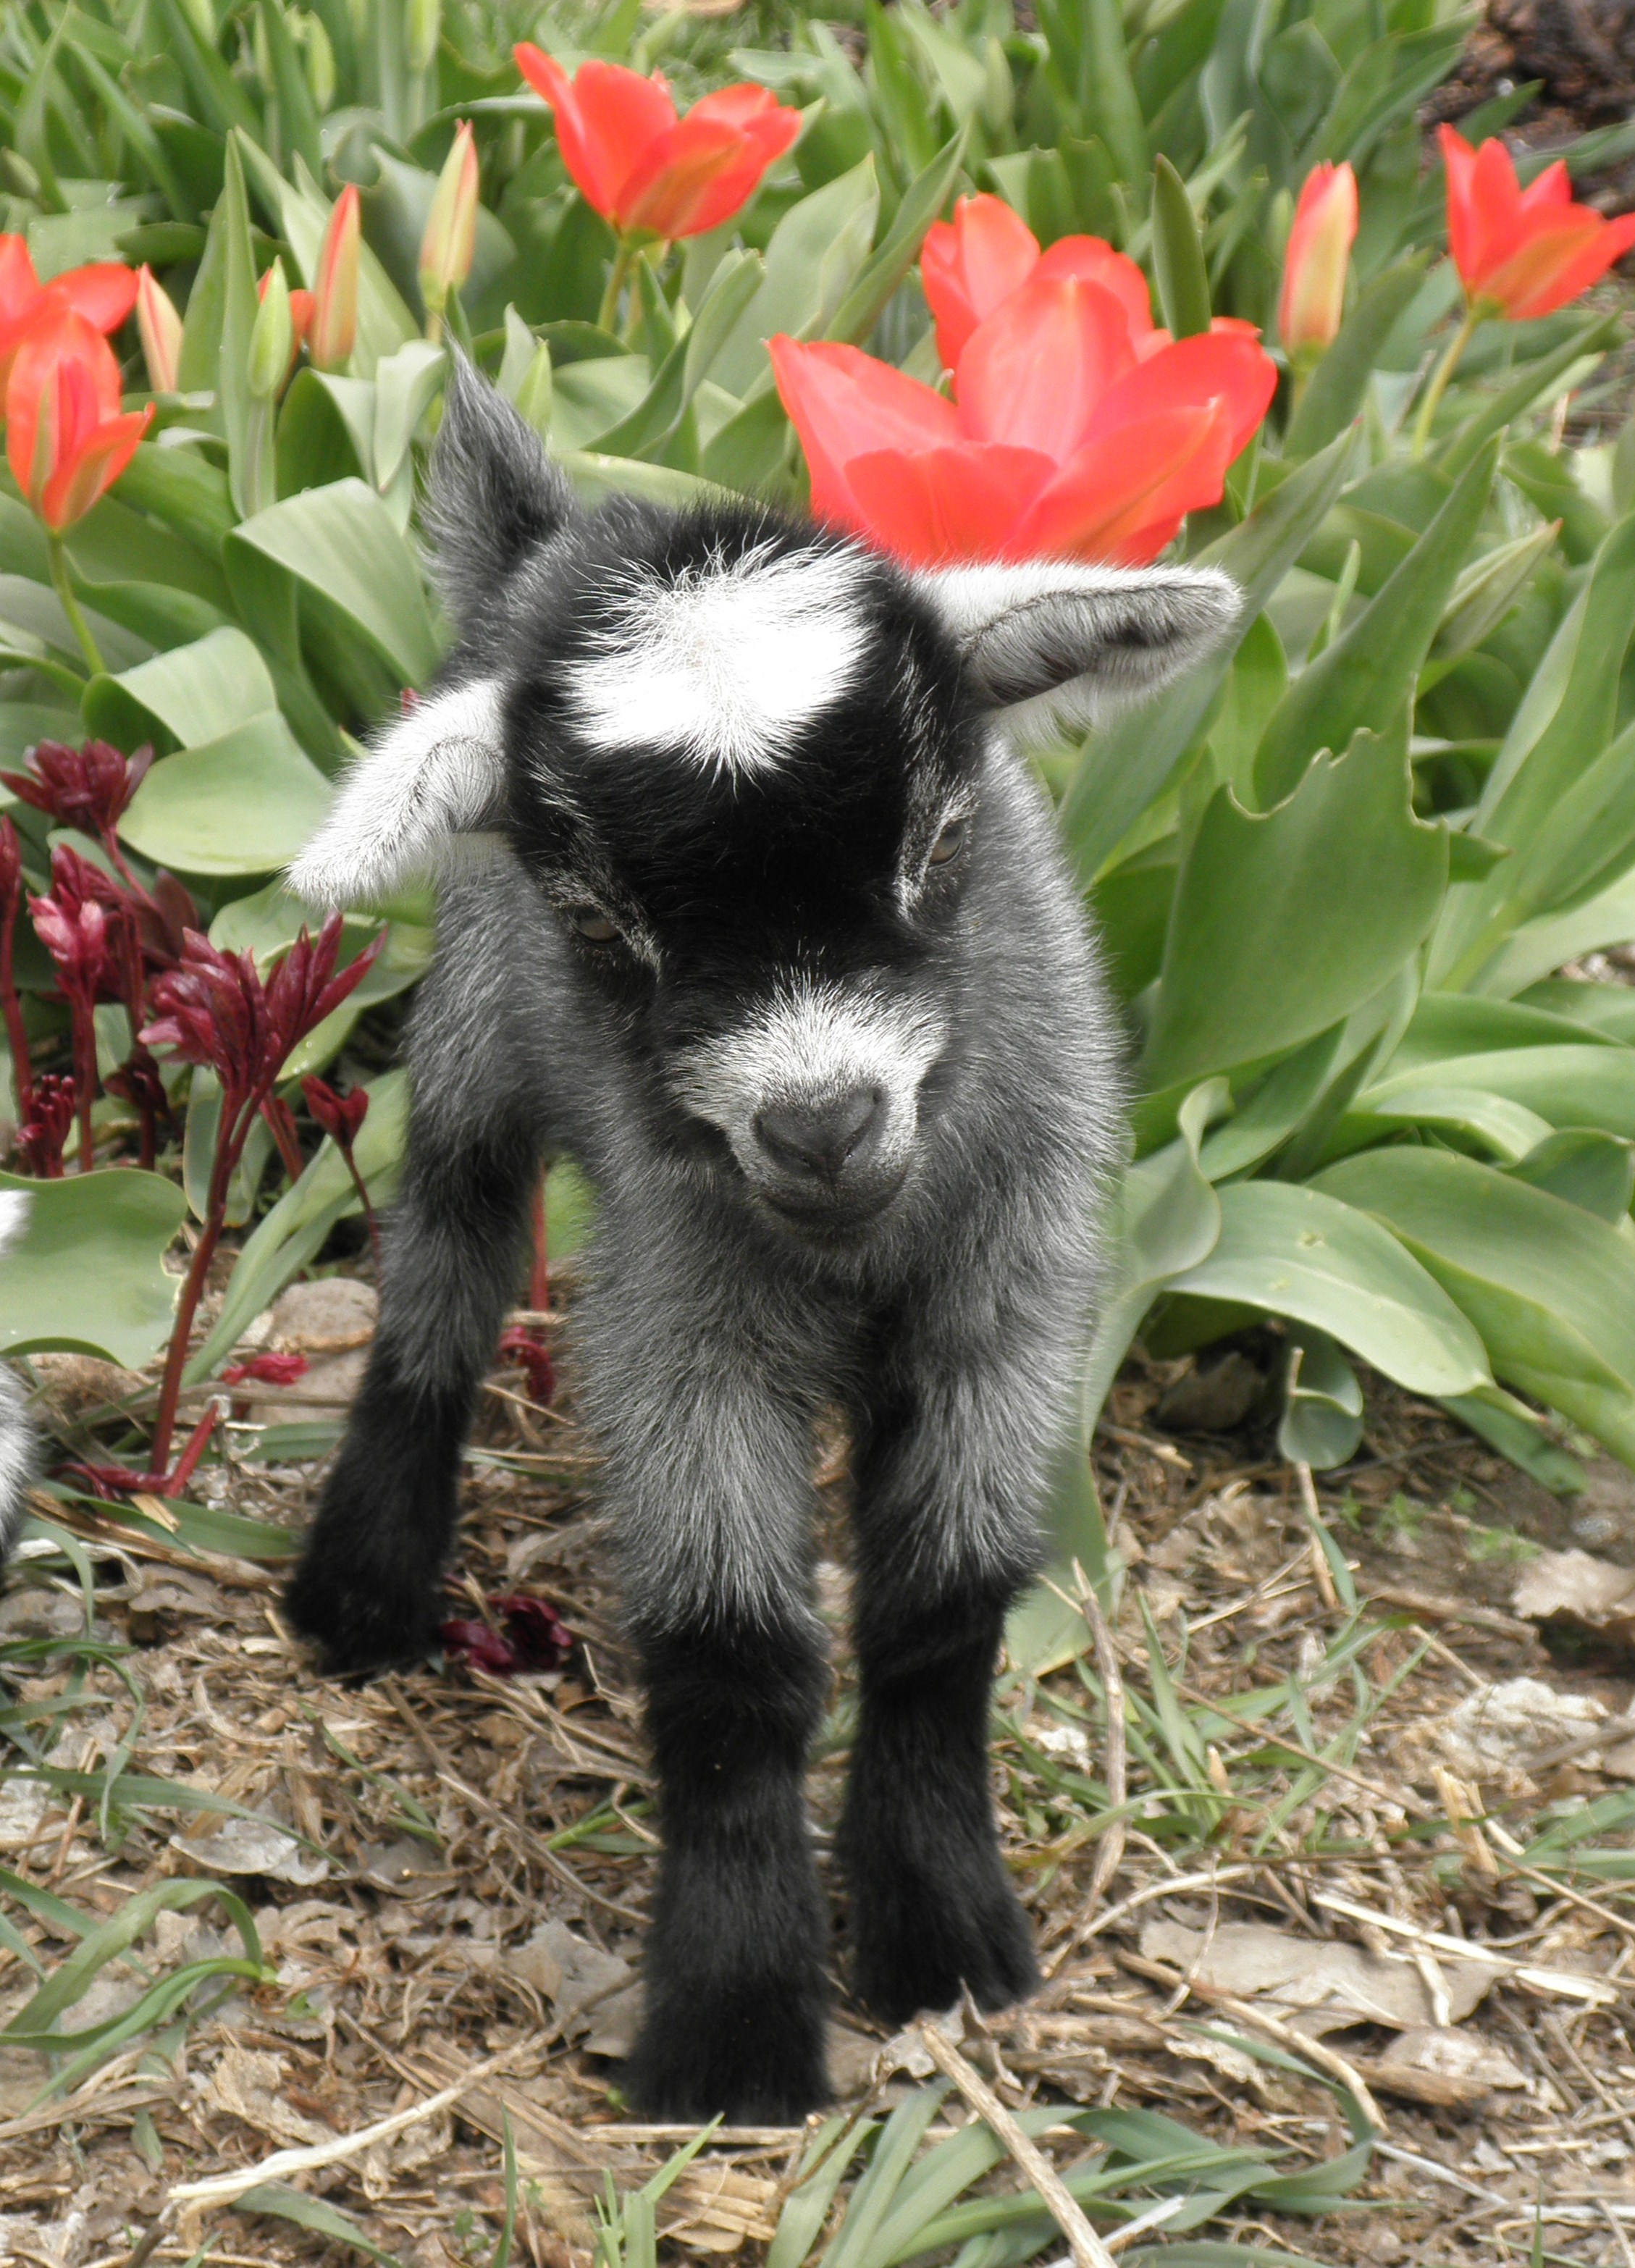 Baby goat | Old Farmer's Almanac